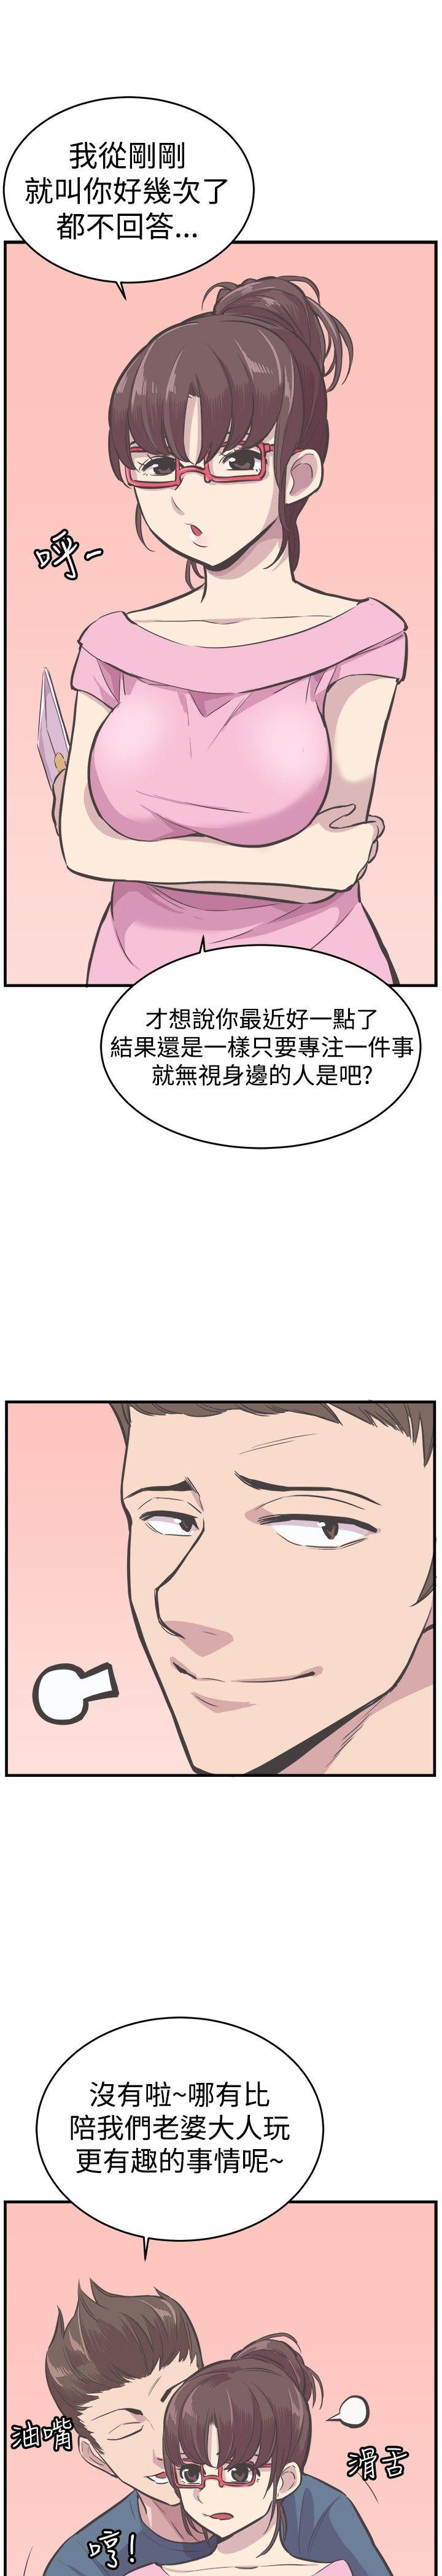 青春男女(完结)  最终话 漫画图片21.jpg